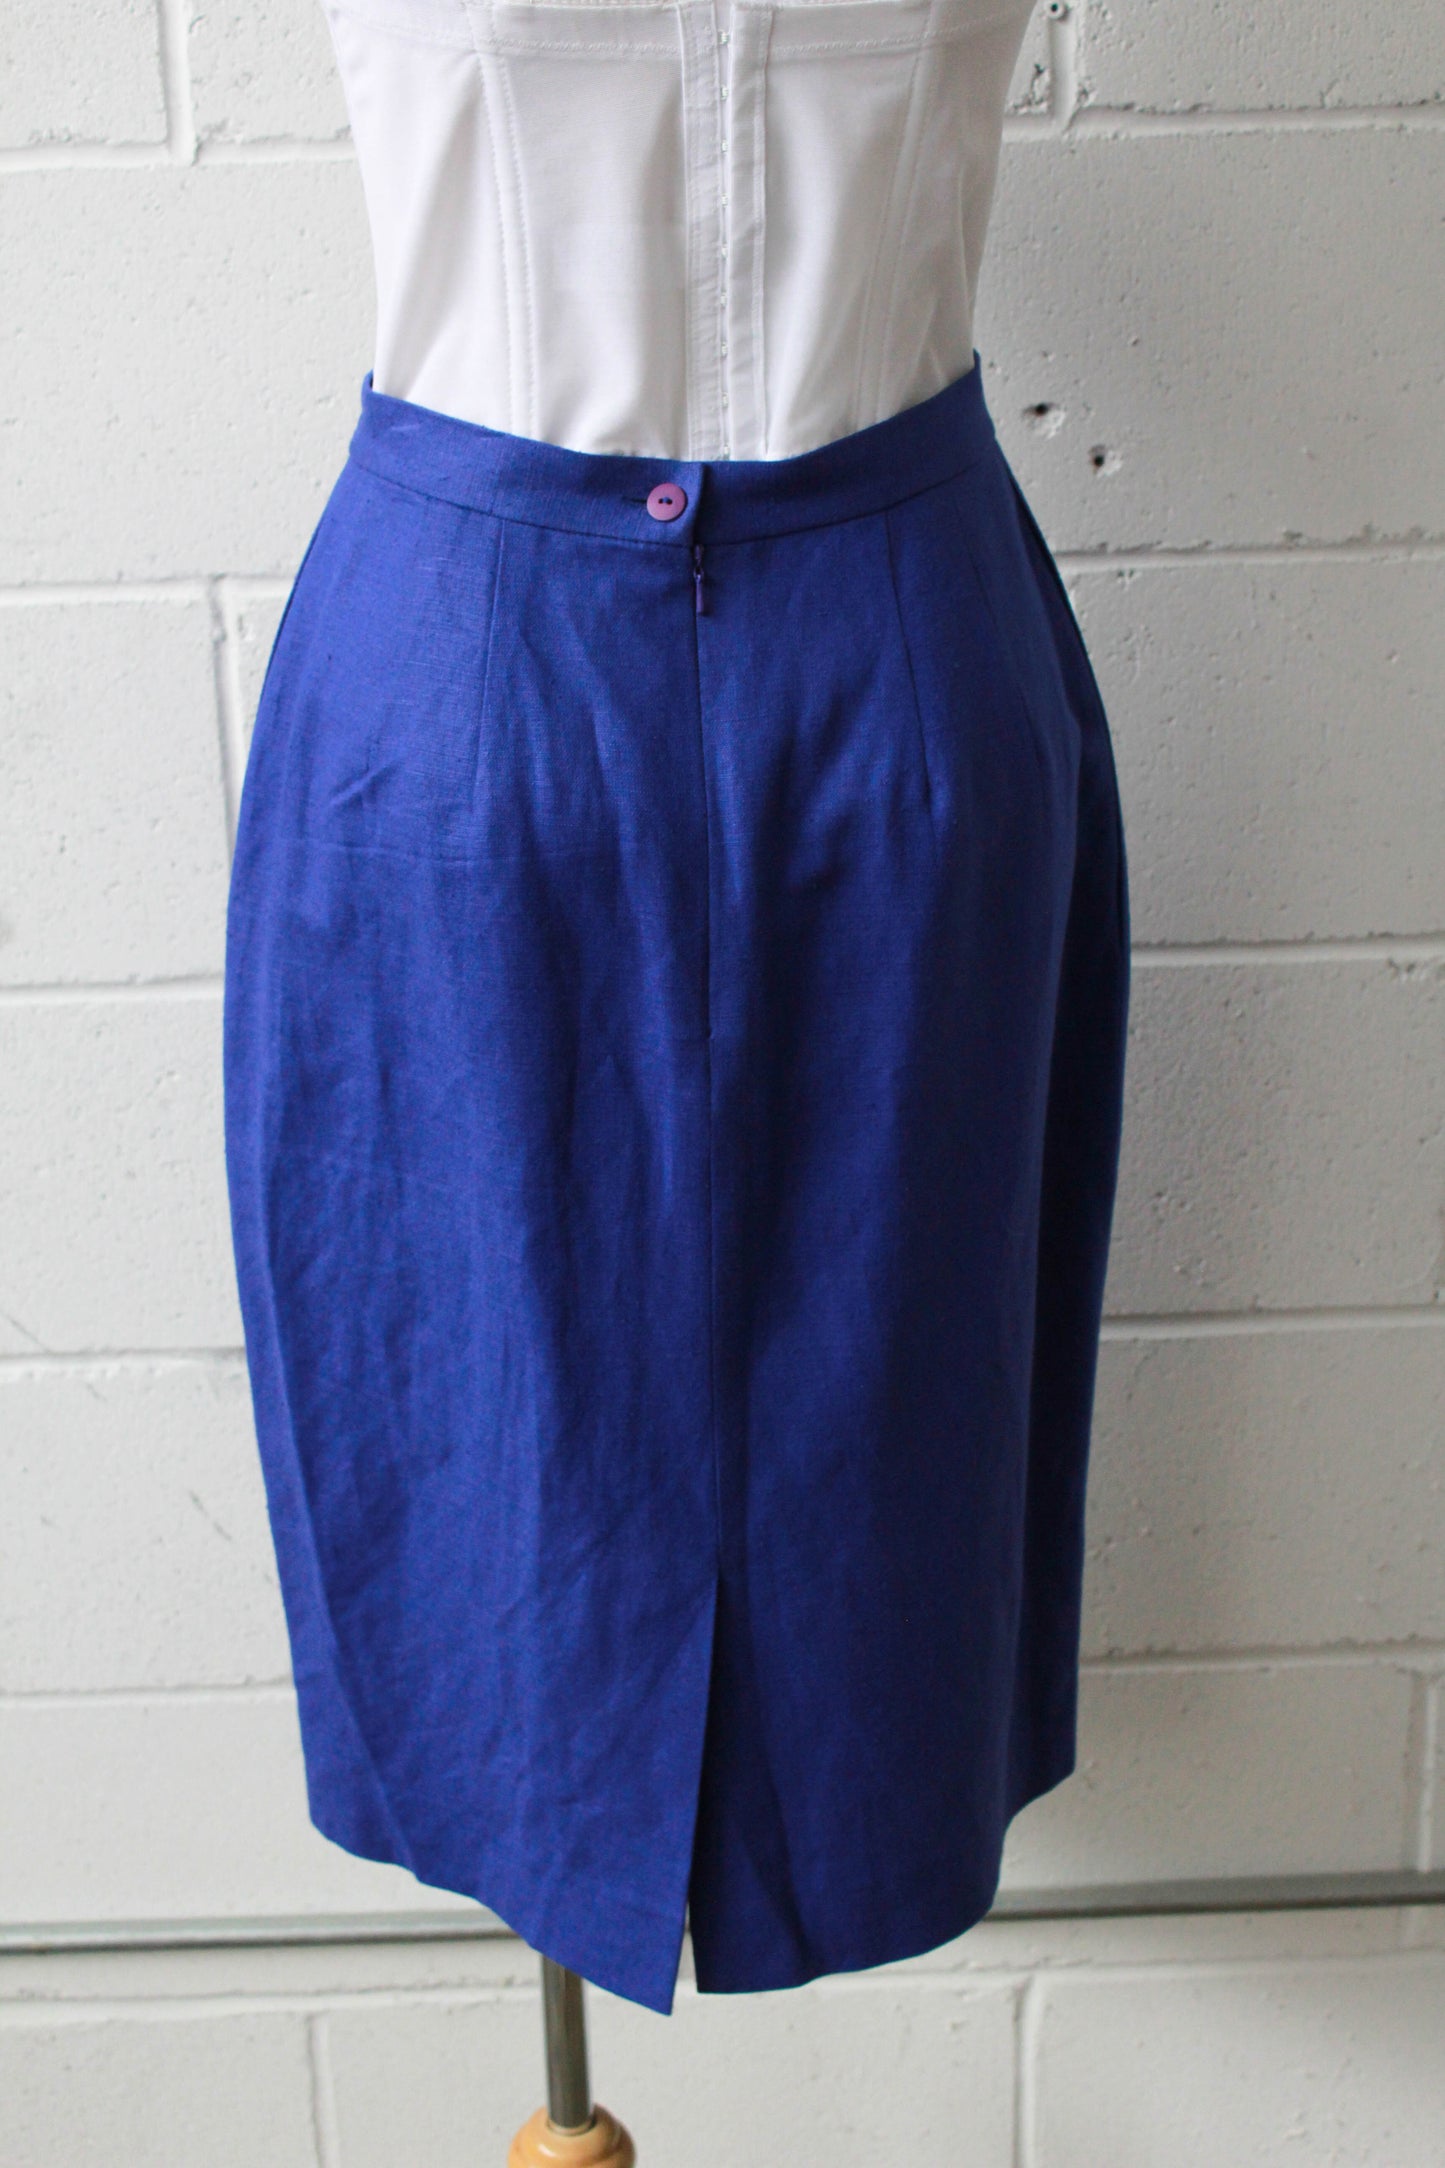 Ocean Blue Pencil Skirt, Waist 28"